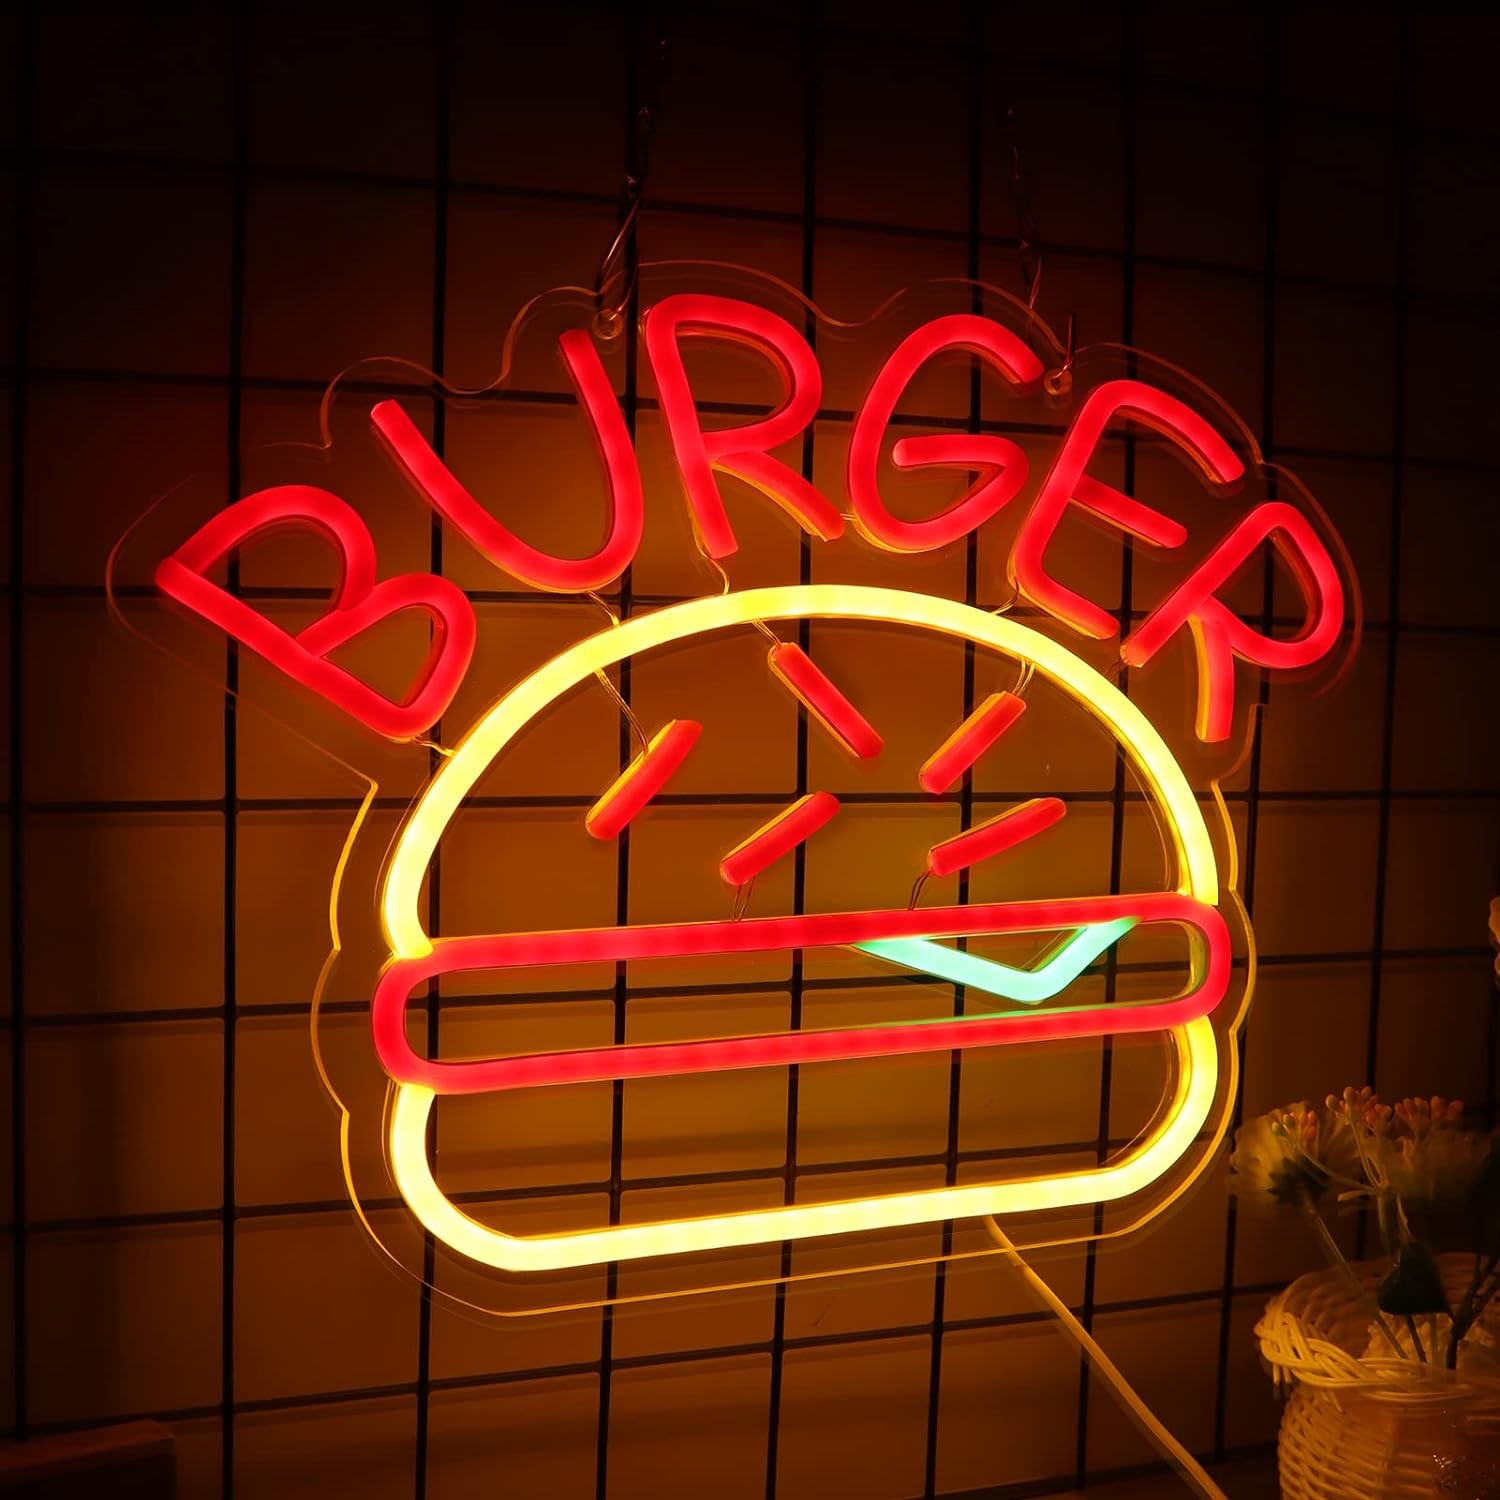 logo dell'insegna al neon di illuminazione dell'hamburger sulla parete